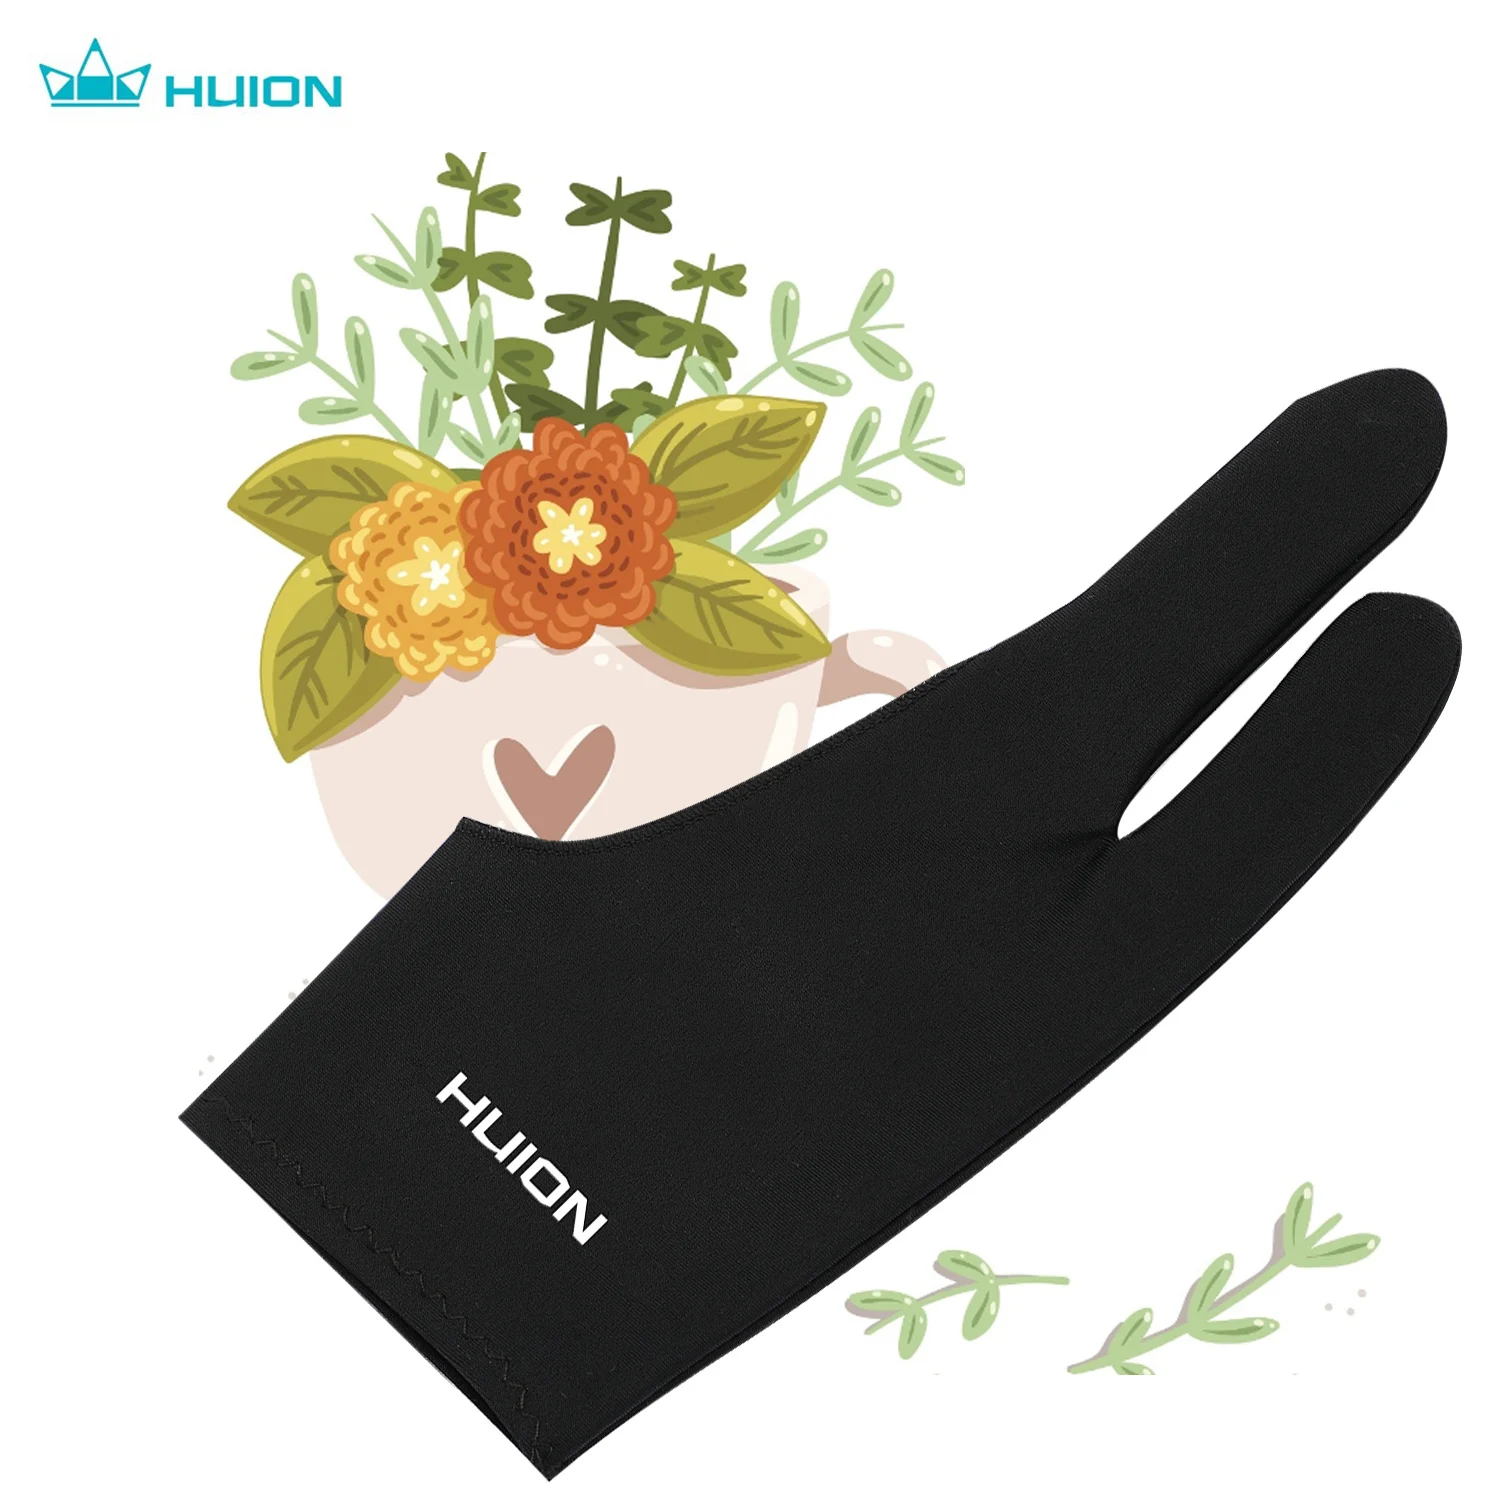 Huion GL200 Двухпальцевая Перчатка Для Рисования Свободного Размера Artist Tablet Painting Glove для Графических Планшетов Huion / Wacom / BOSTO/UGEE